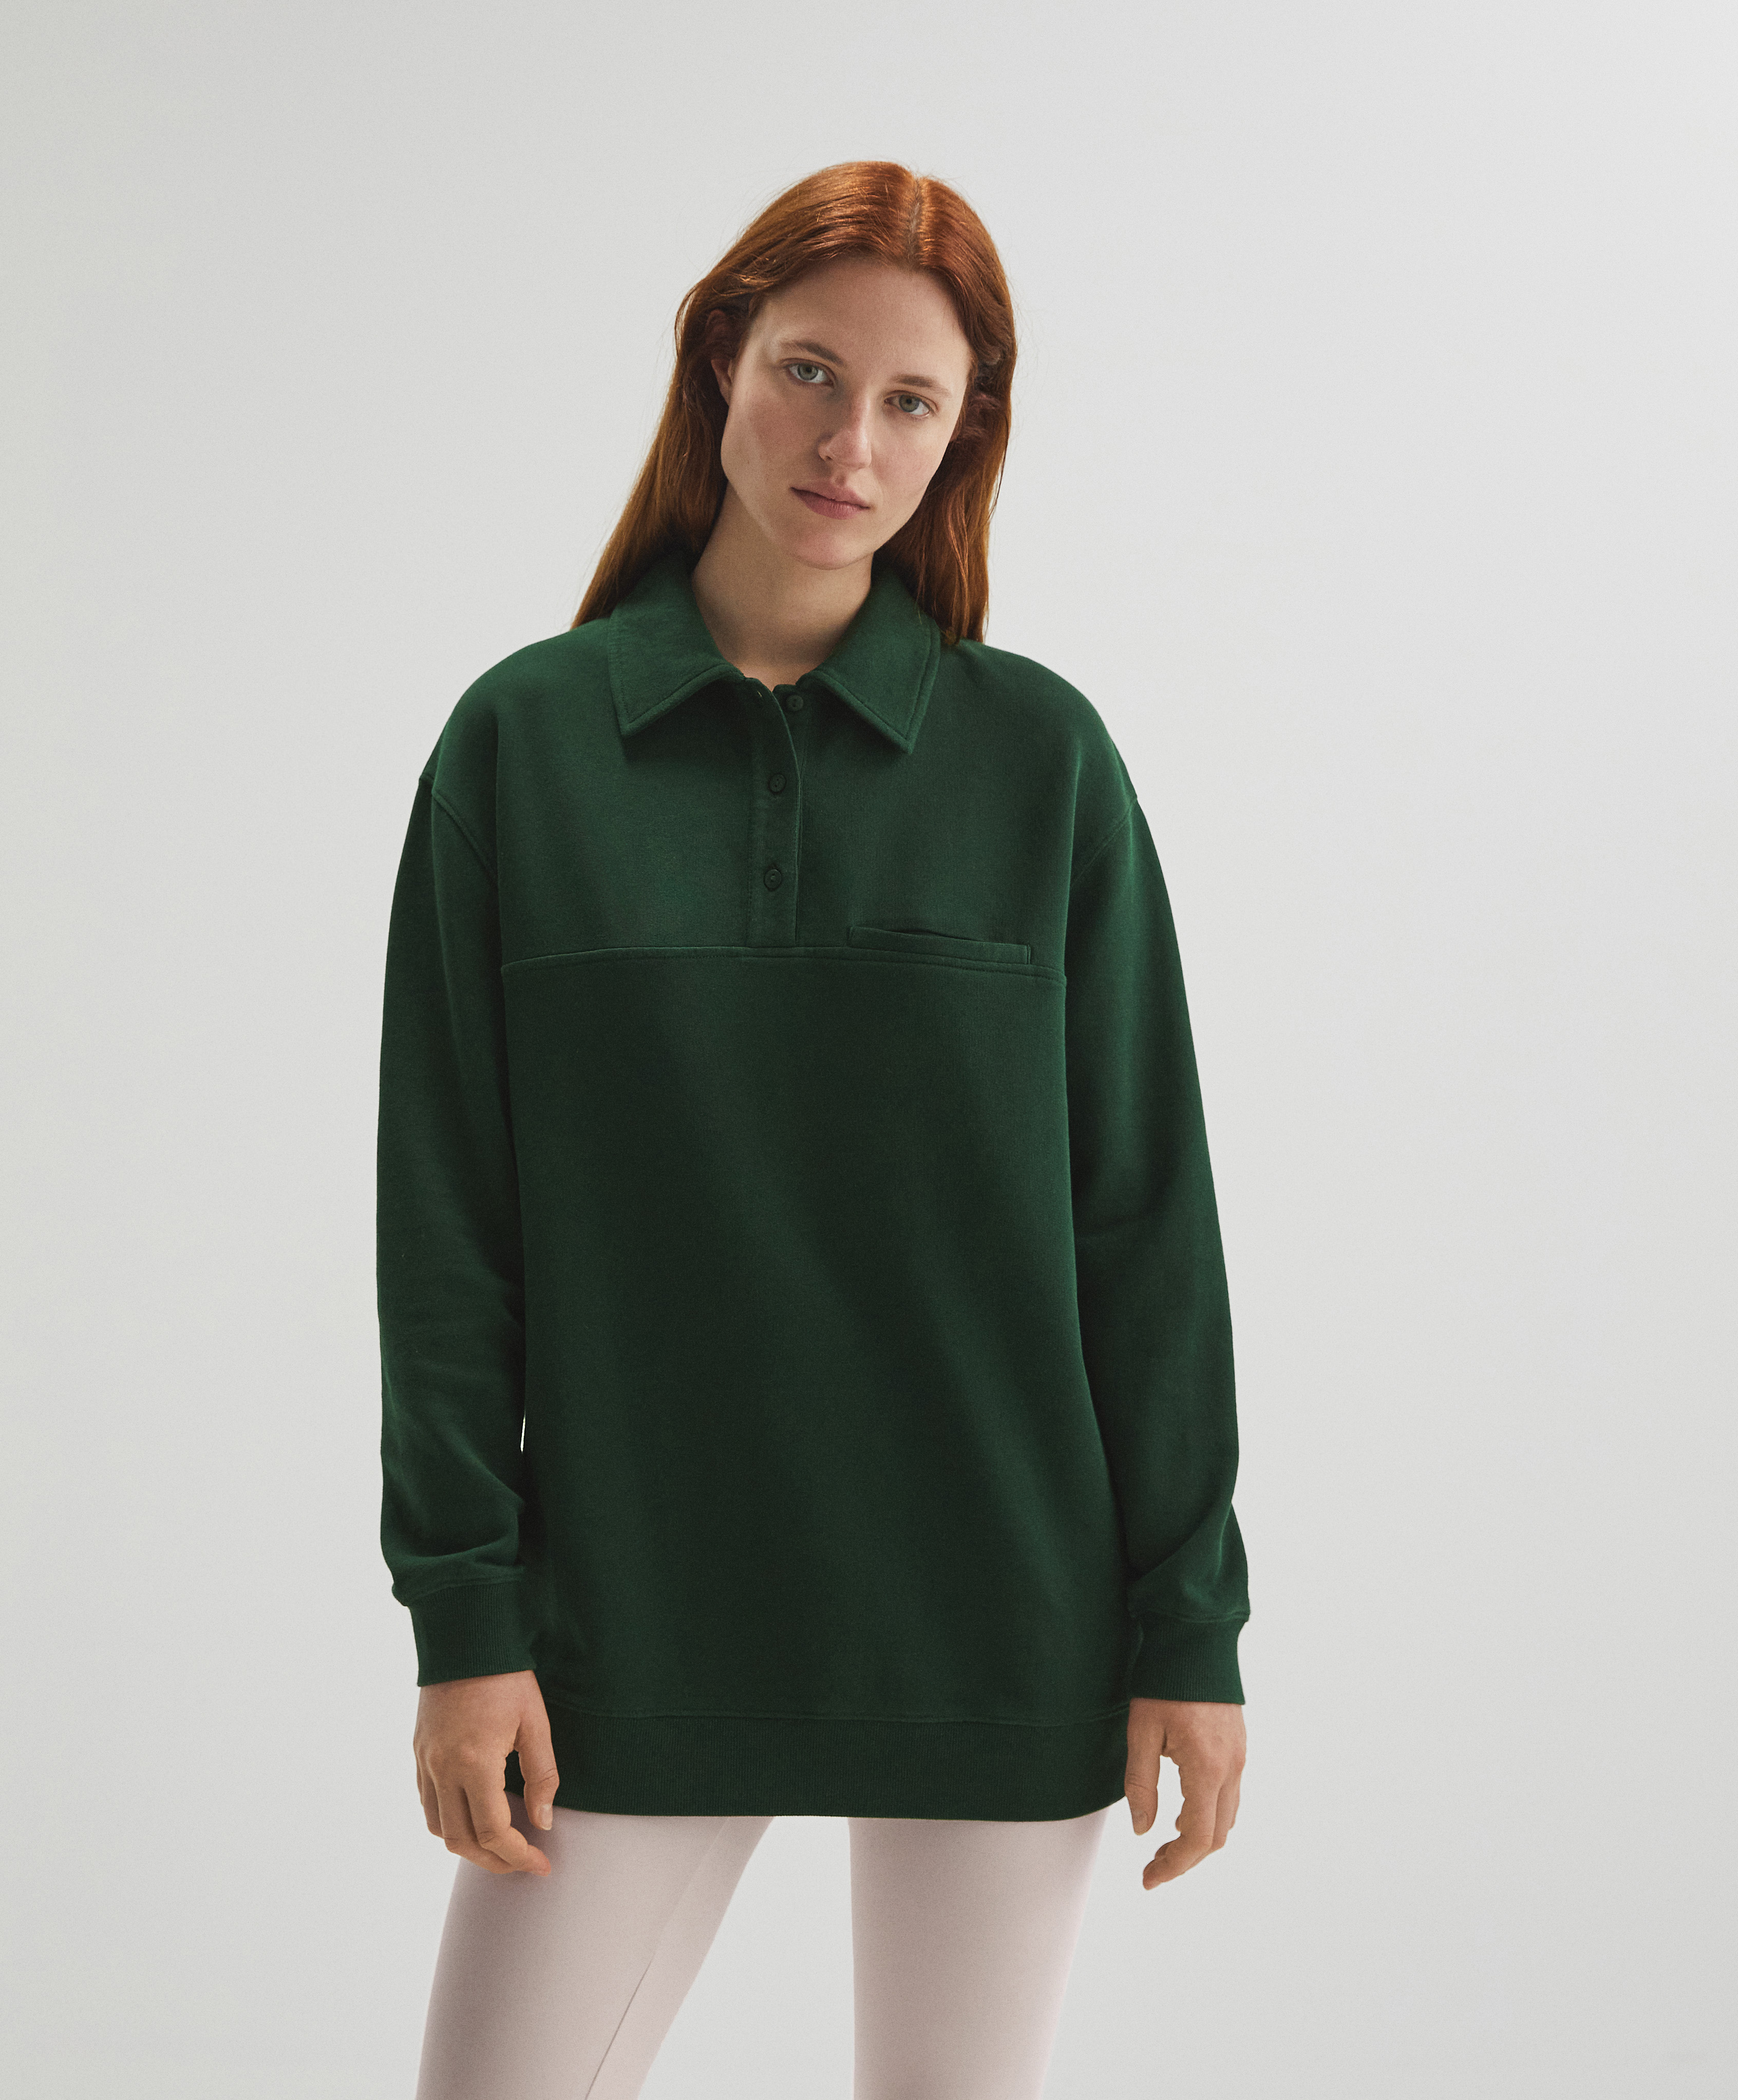 Oversize 100% cotton polo sweatshirt